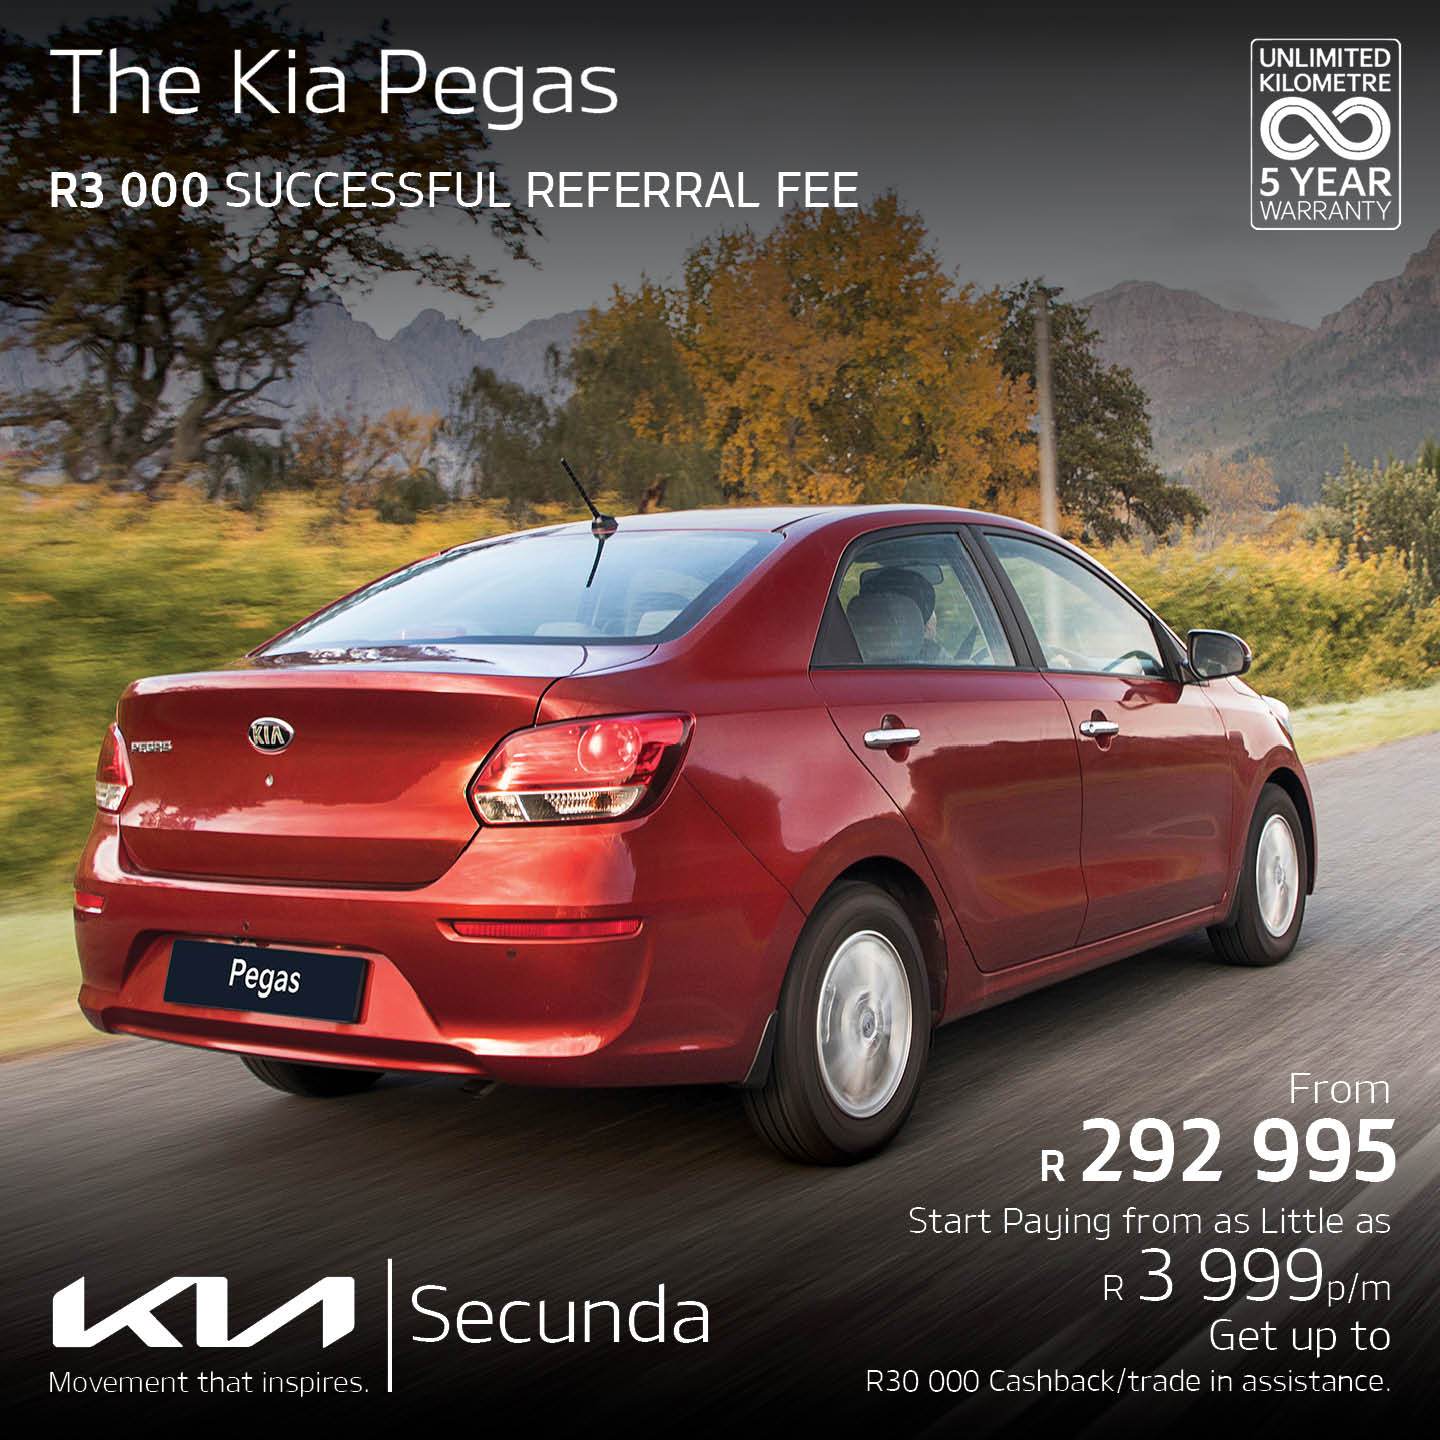 The KIA Pegas image from 